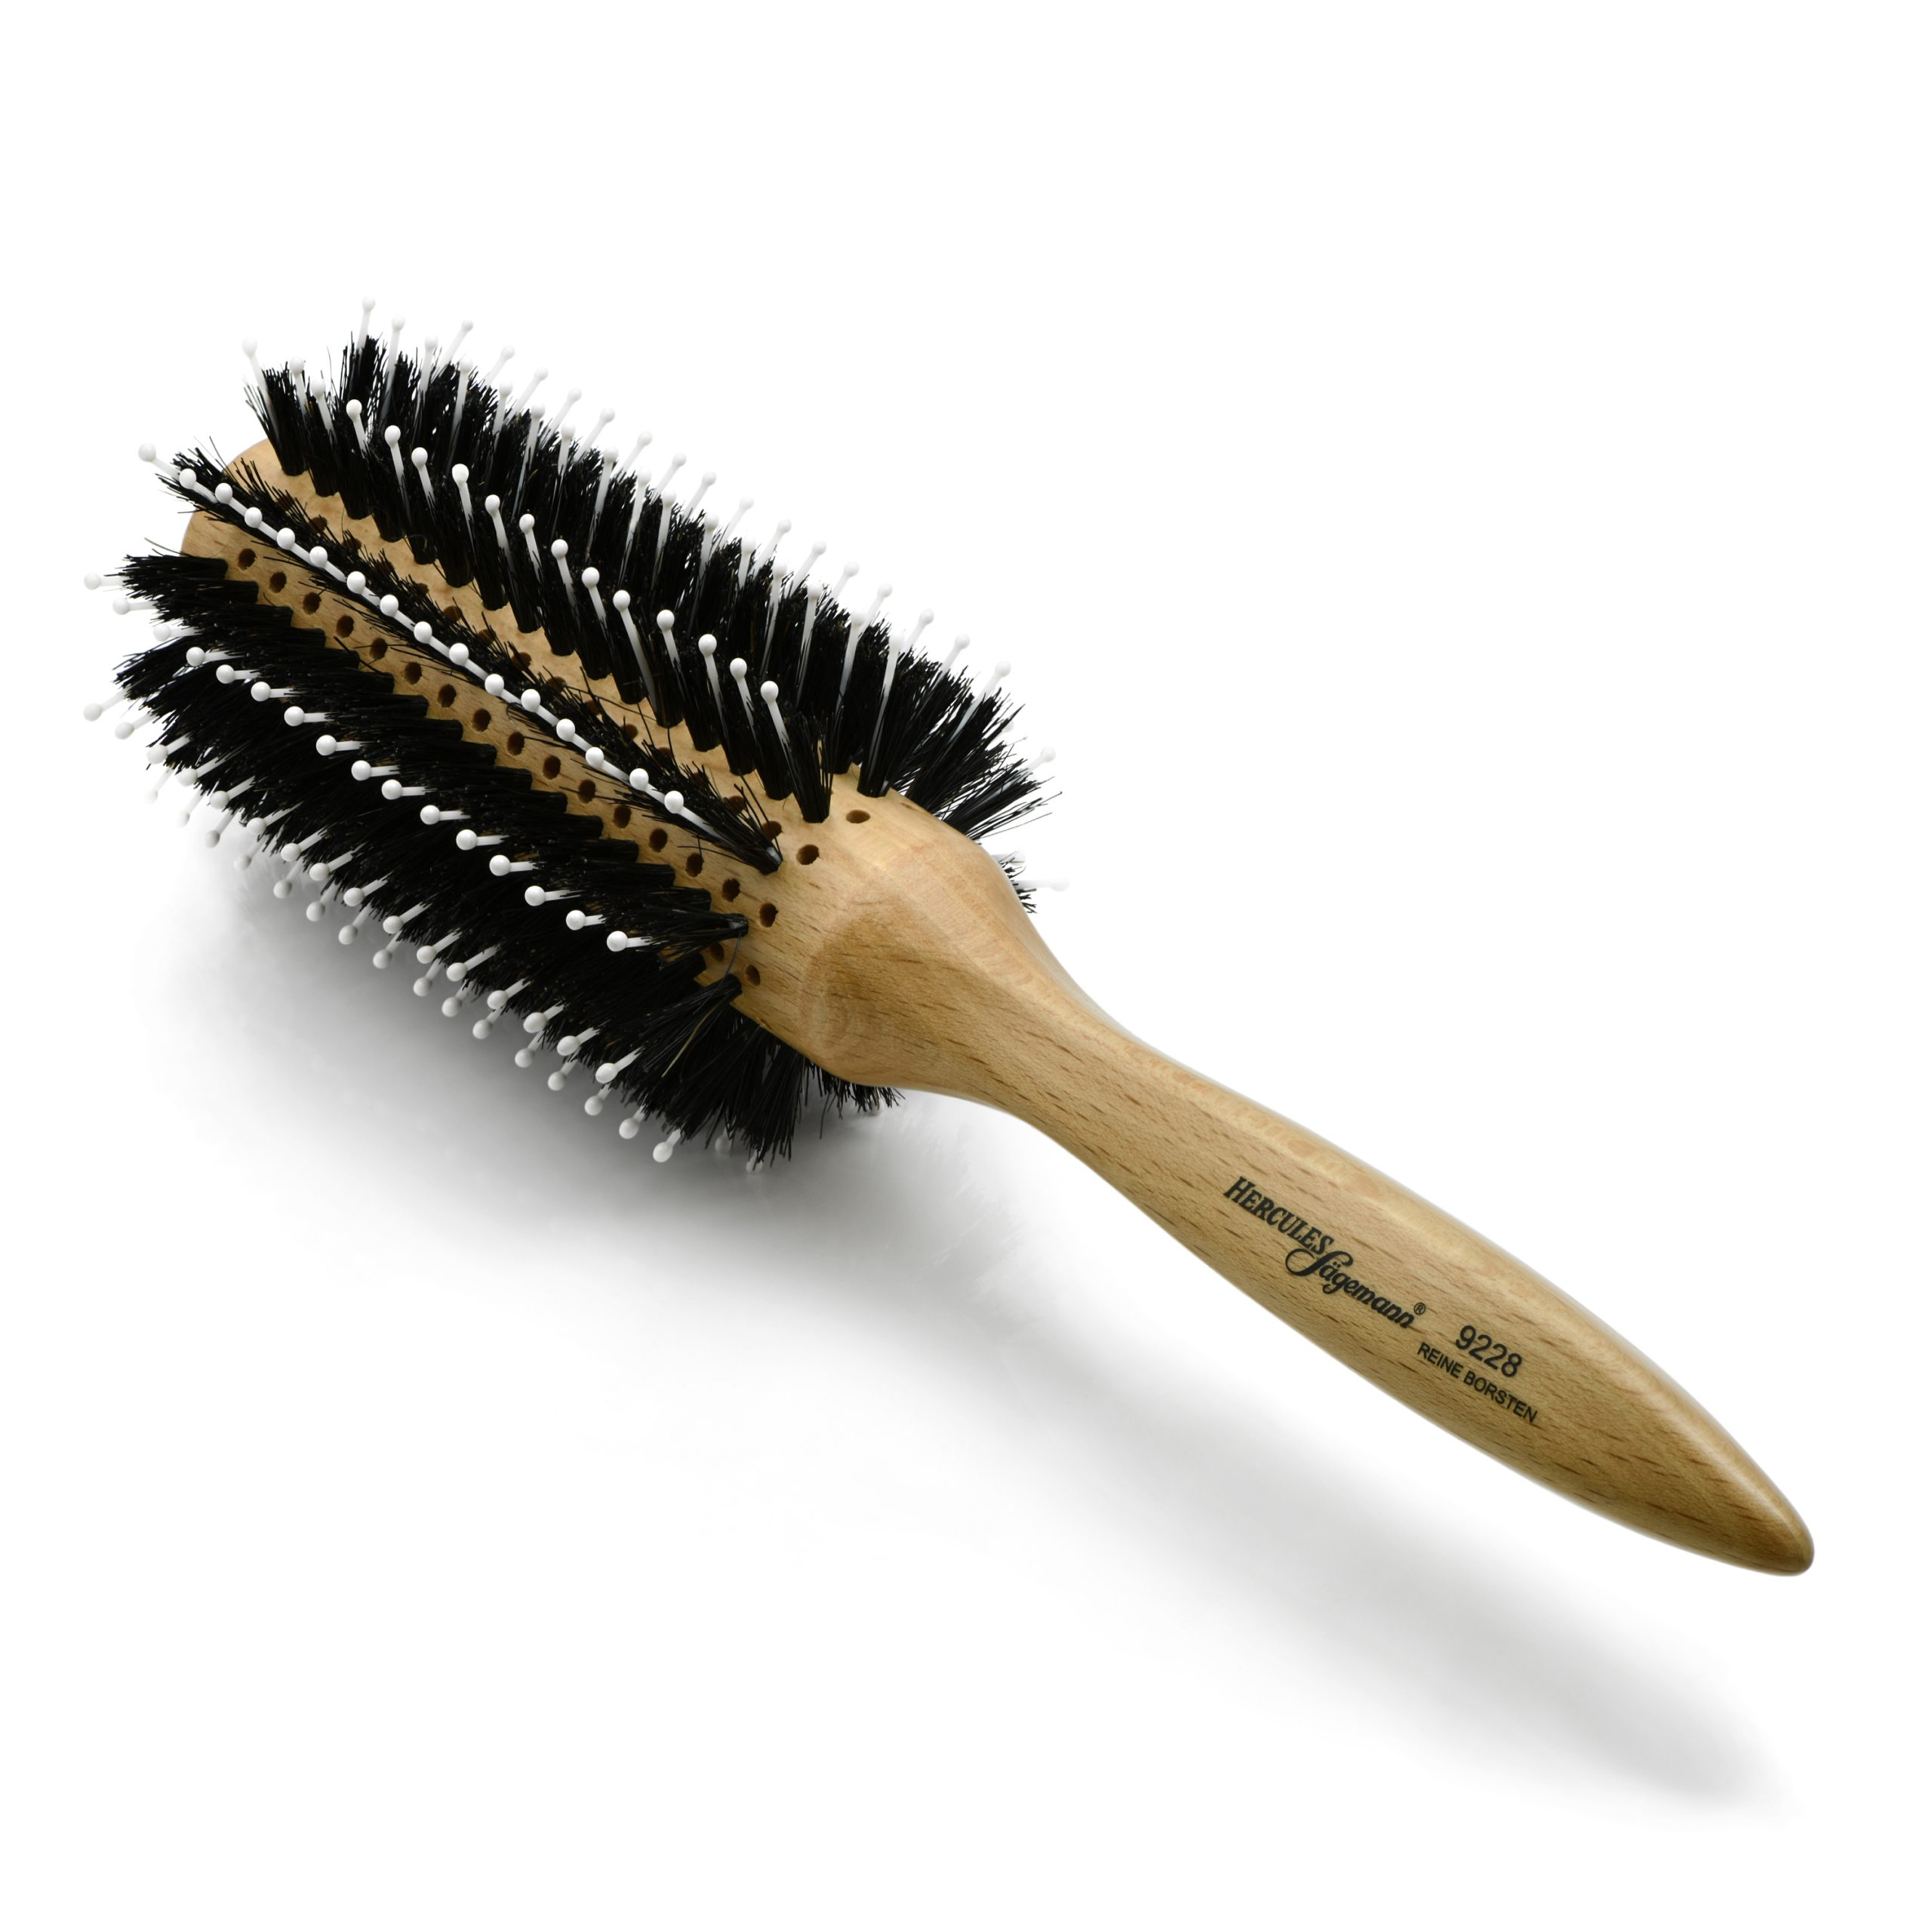 Hercules Sgemann Round Boar Bristle Hair Brush 9228, 30/65 mm